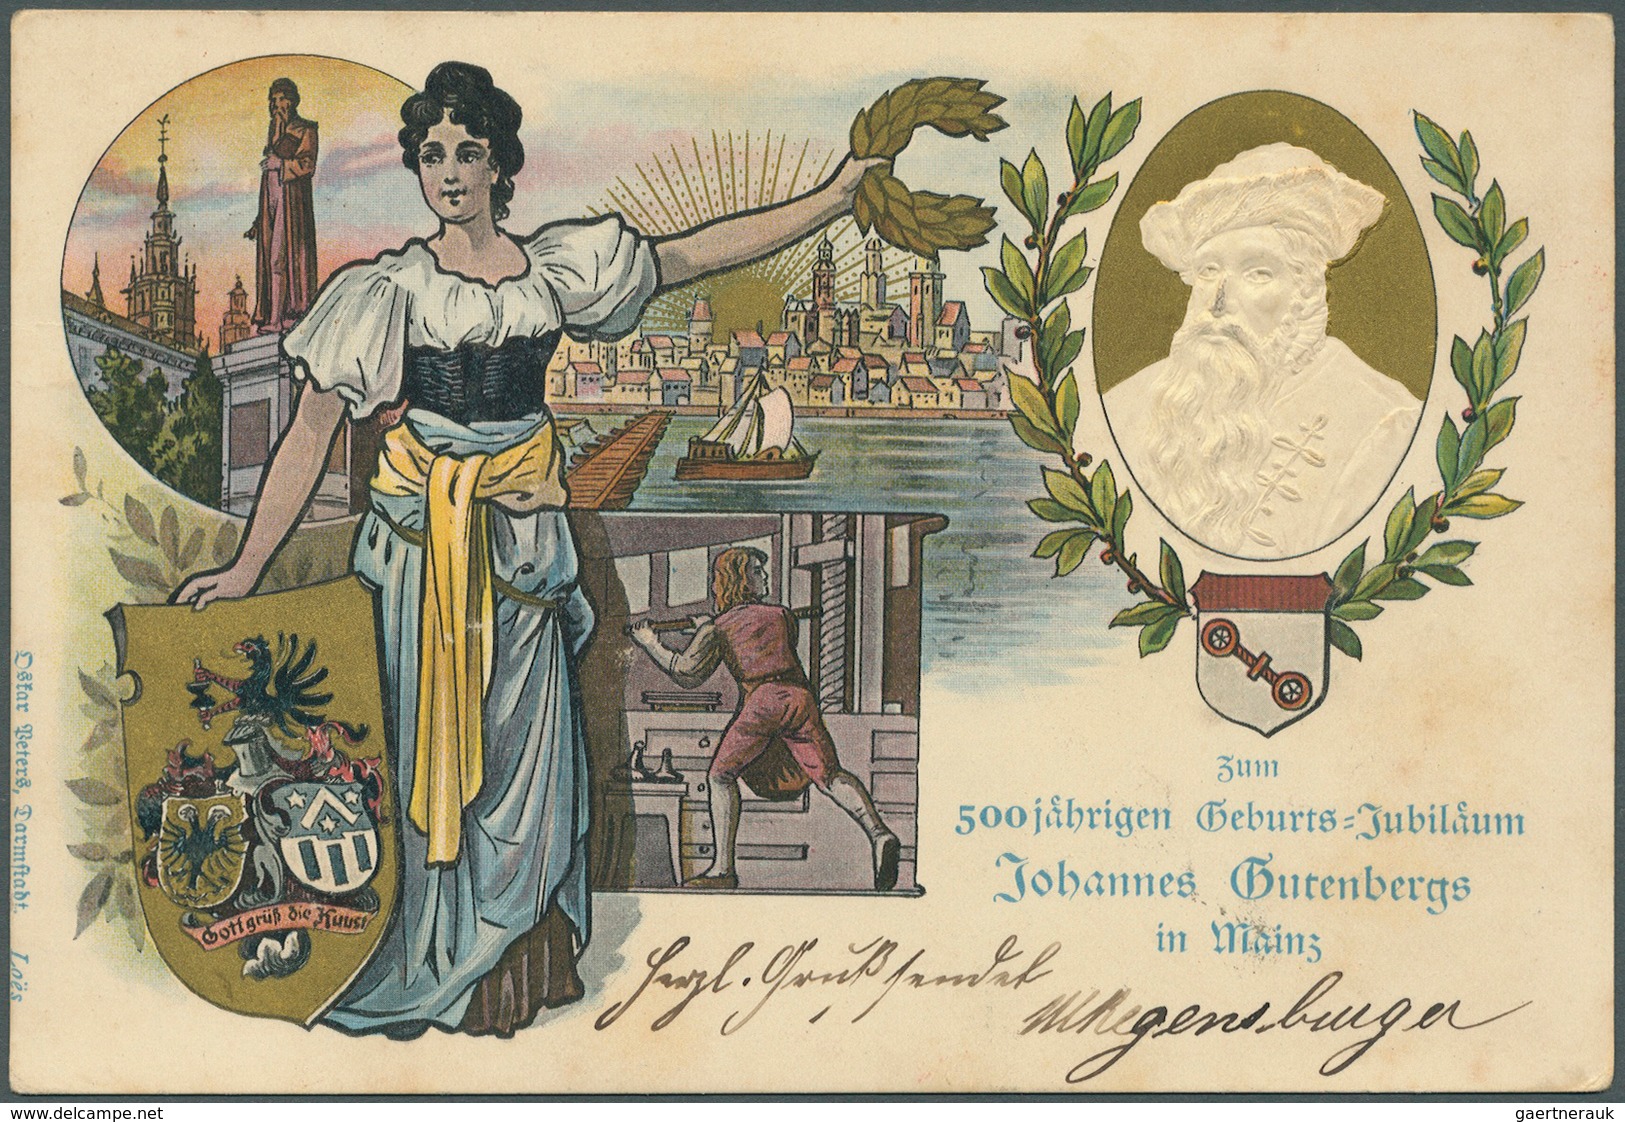 Deutsches Reich - Ganzsachen: 1900/1915, Posten von 345 Privat-Postkarten aus PP 11 bis PP 23, ungeb